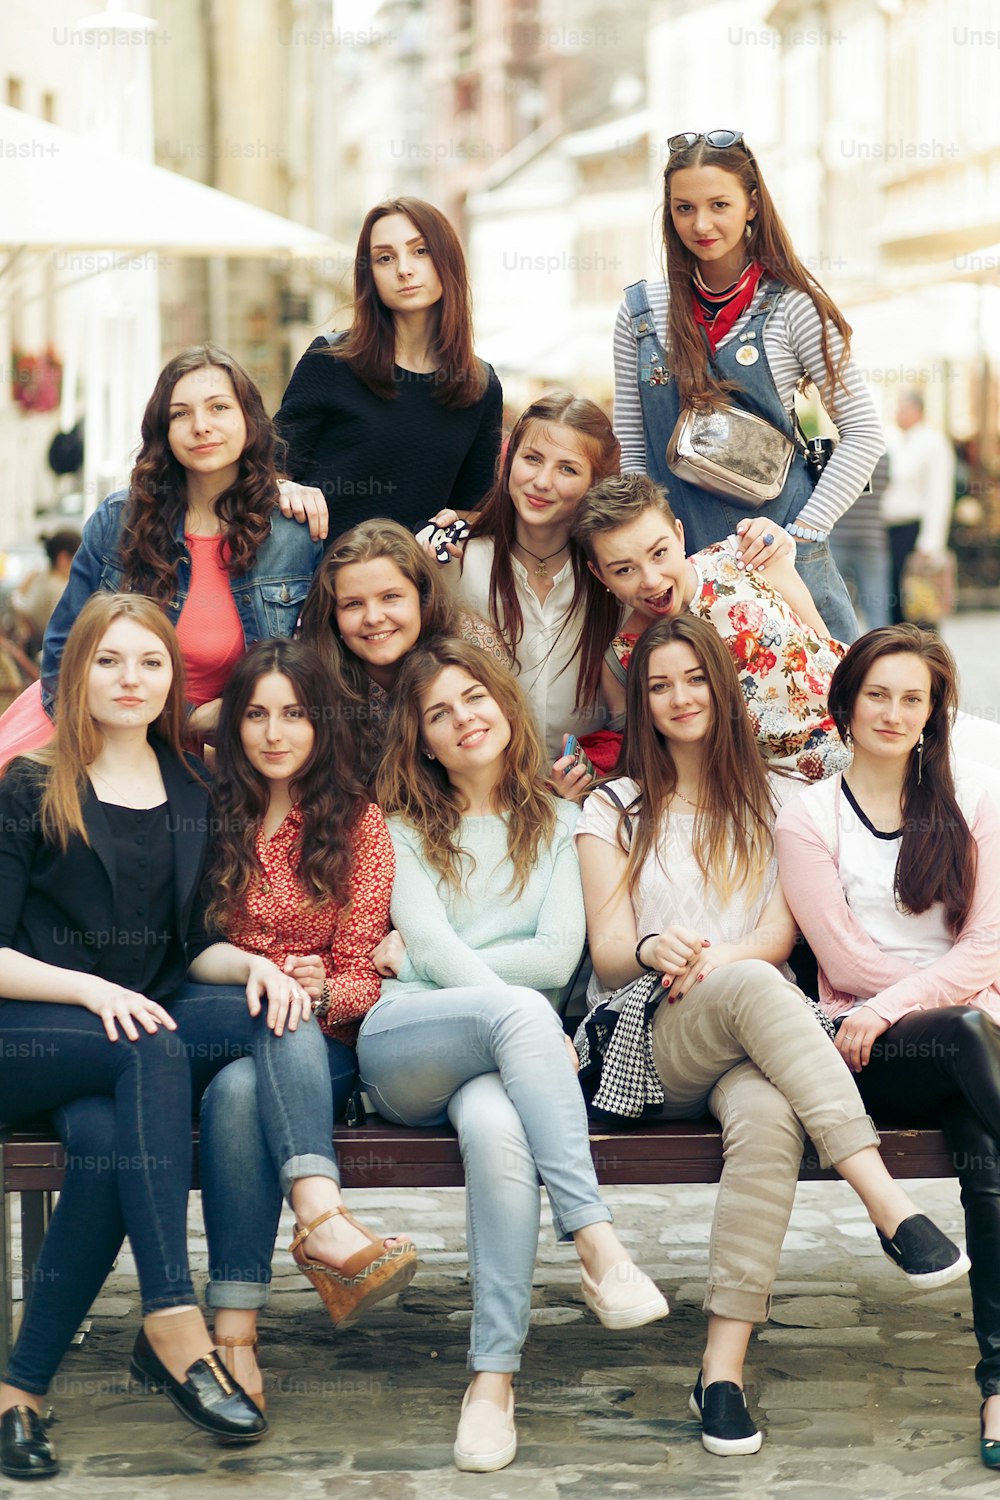 stilvolle glückliche Frauen Hipster modisch gekleidet lächelnd und auf der Bank sitzen in Europa City Street, freudige Momente Freundschaft Konzept